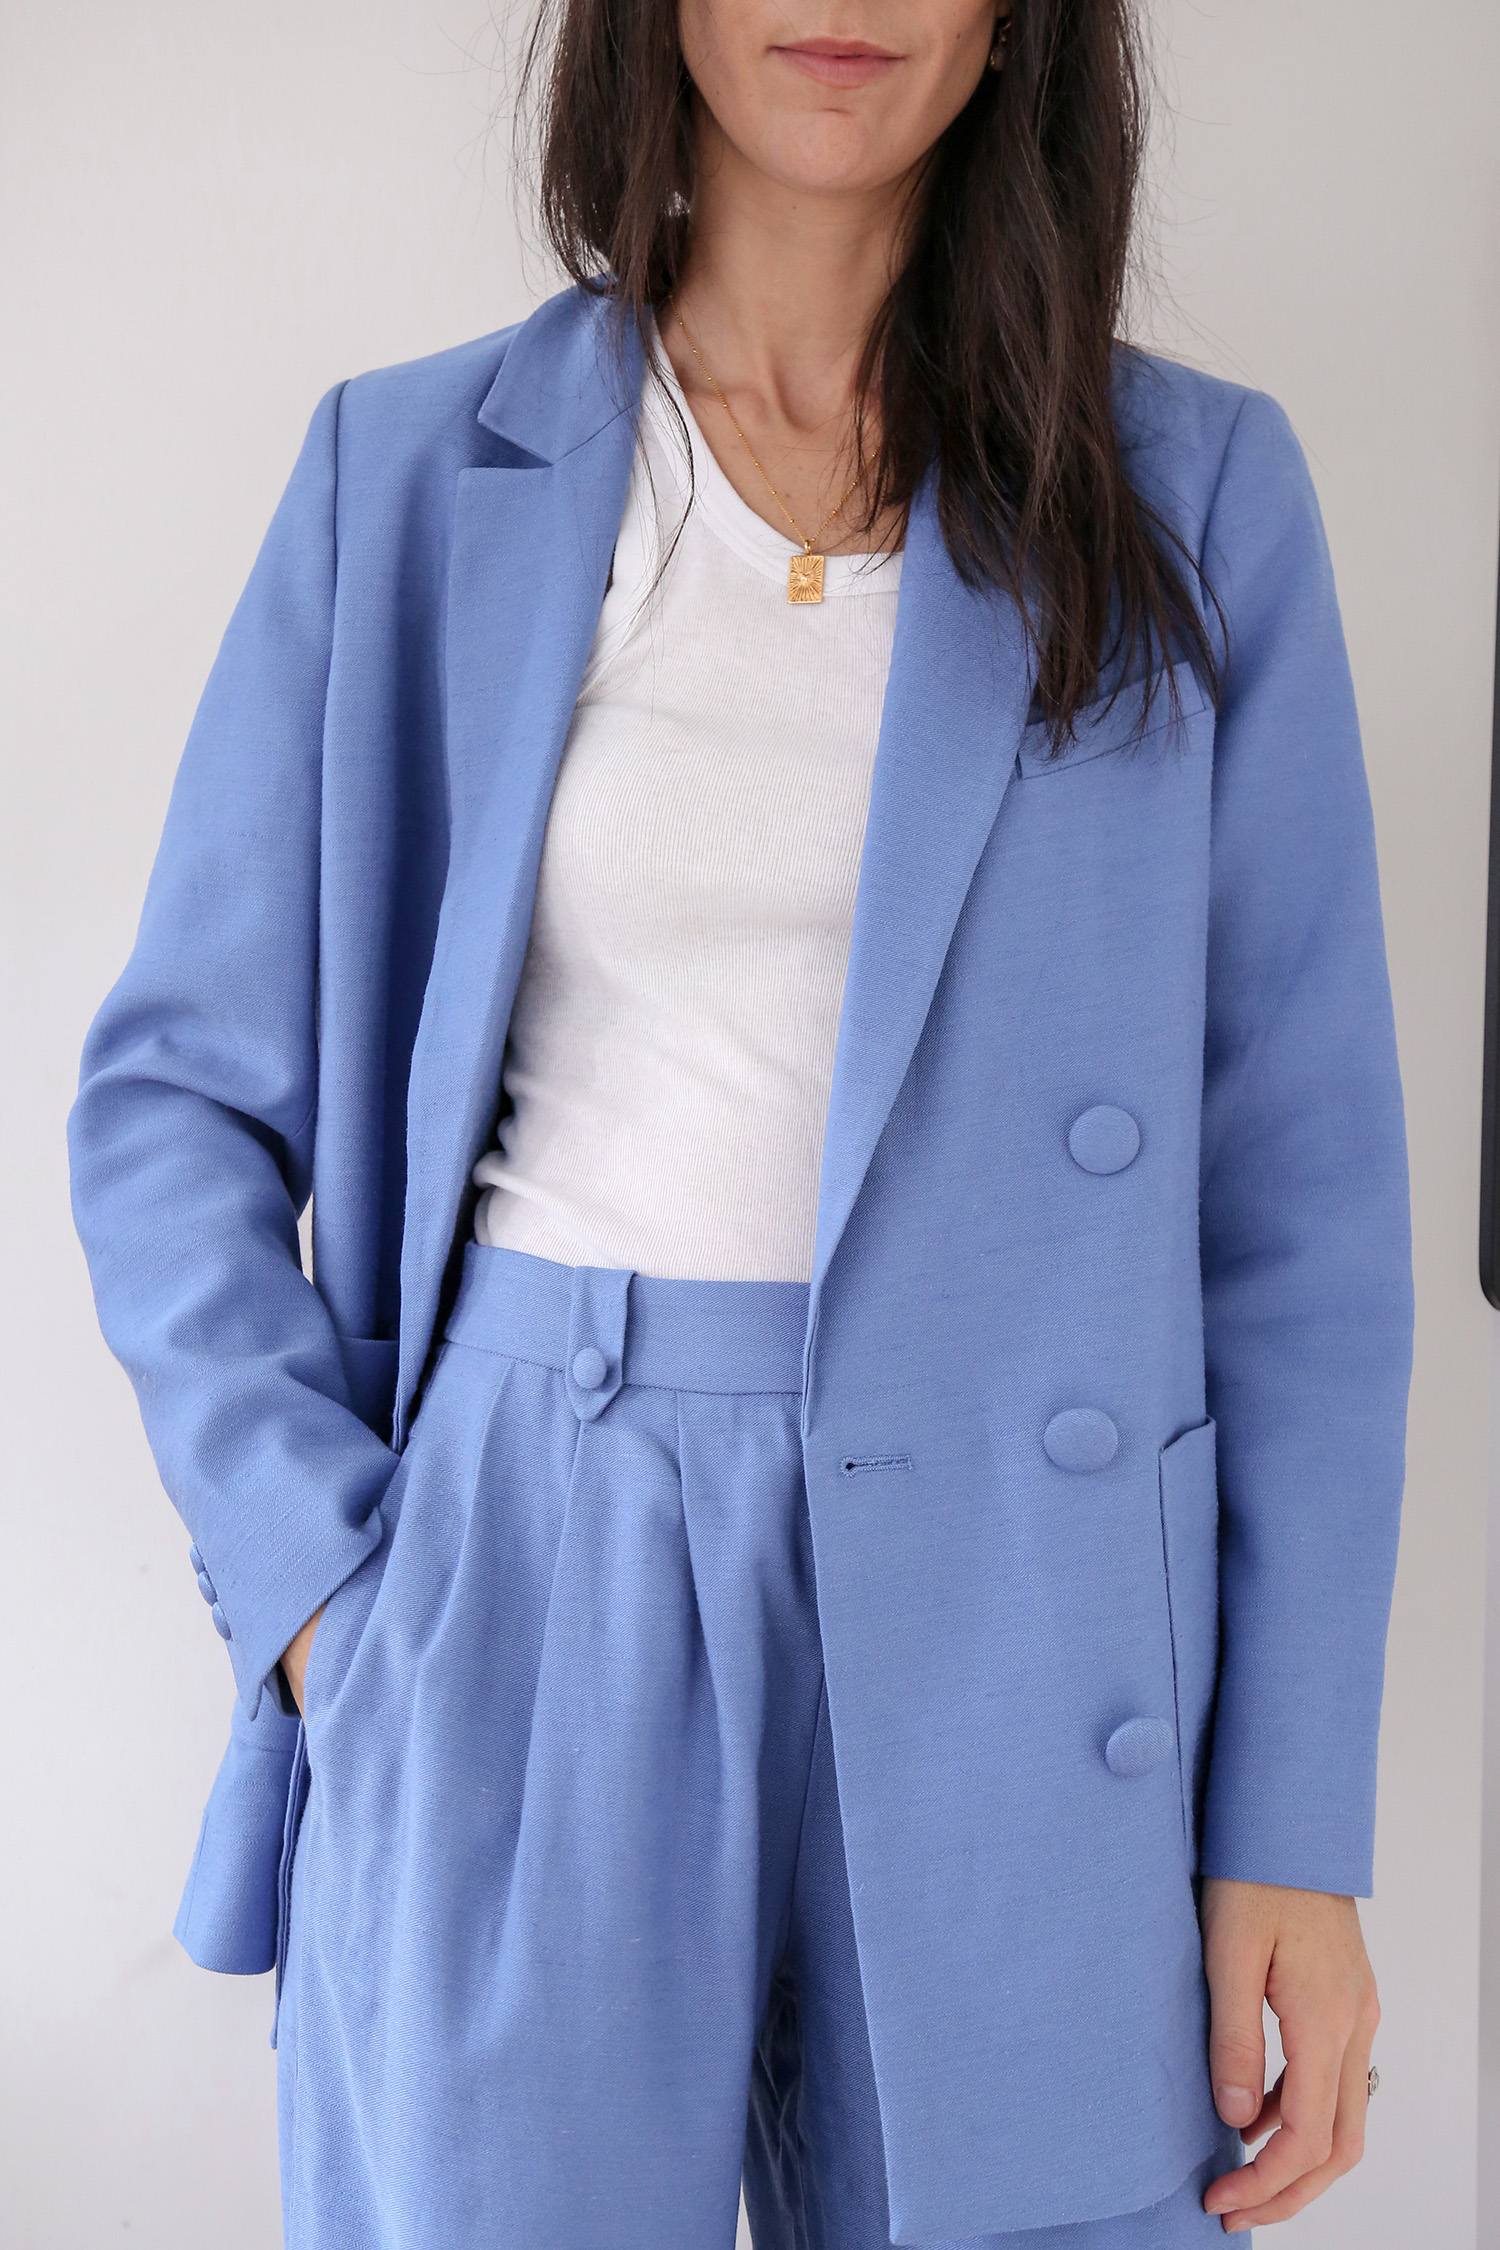 Sezane Michele Jacket in Vintage Blue 